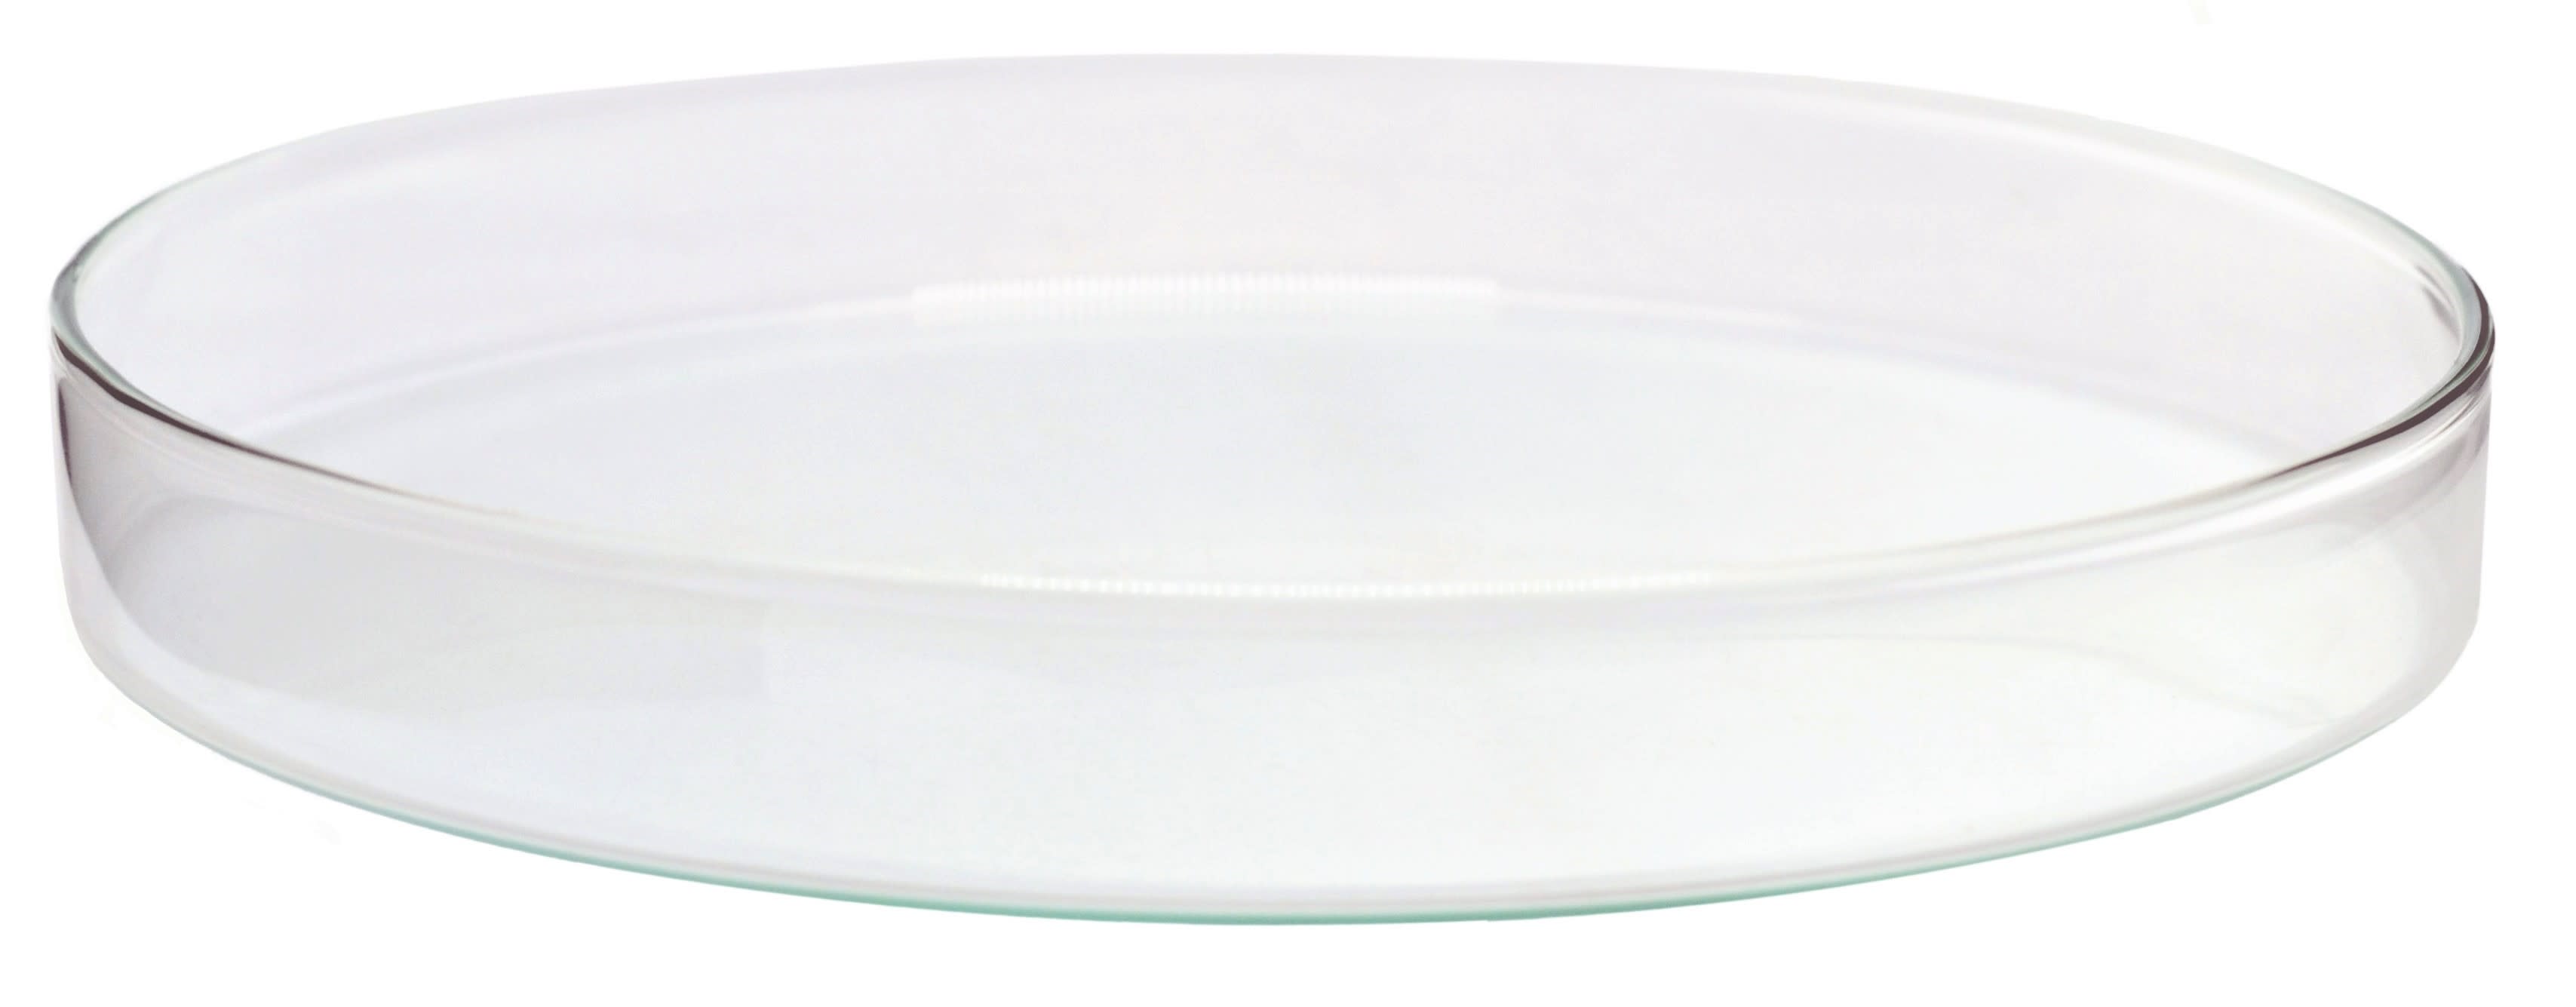 Soda Glass Petri Dish, 180 x 30mm, Autoclavable